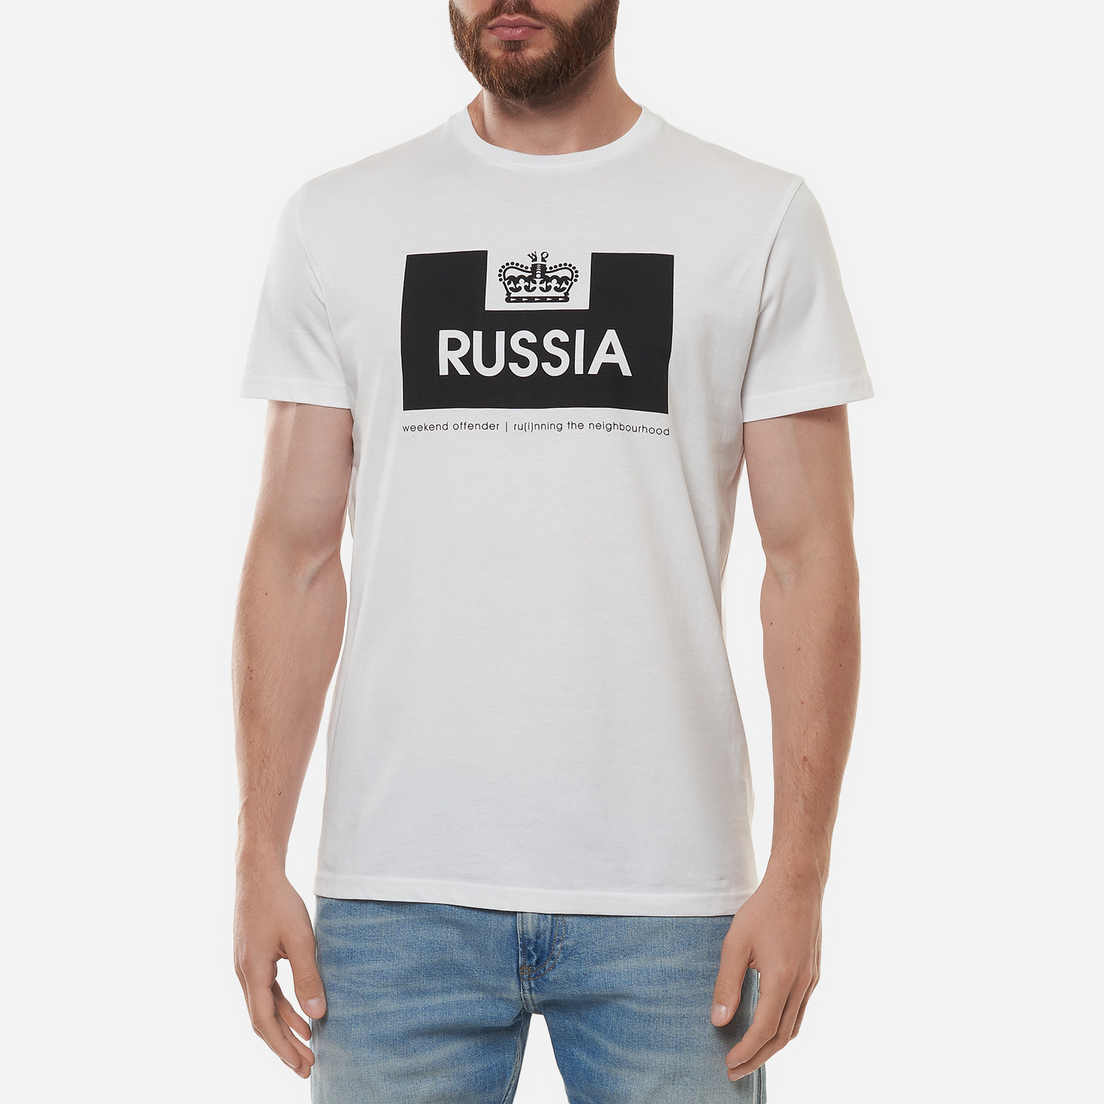 Weekend Offender Мужская футболка City Series 2 Euro Russia